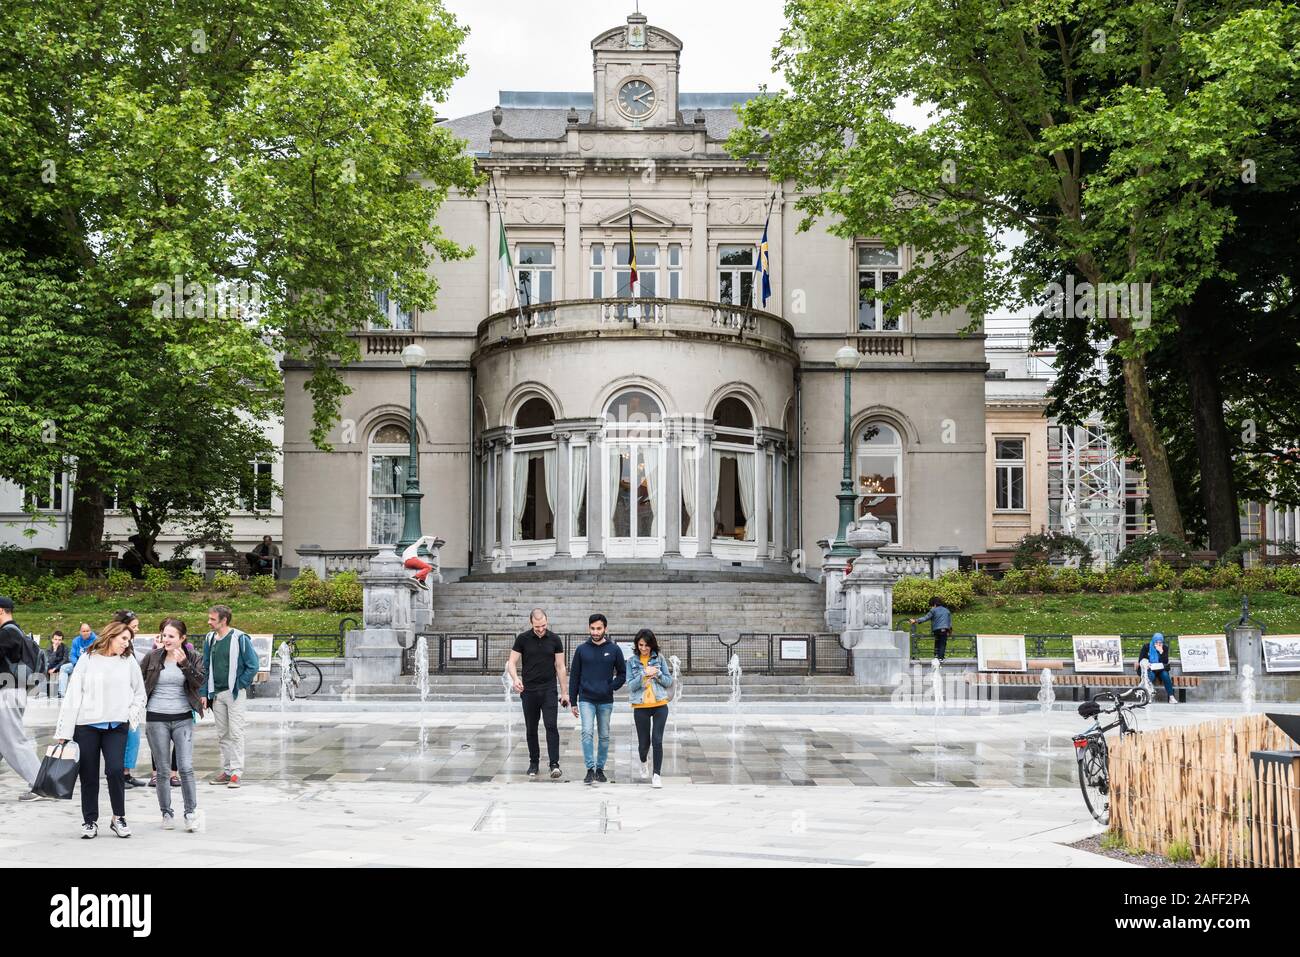 Ixelles, Bruxelles / Belgique - 05 31 2019: Personnes marchant dans la nouvelle zone piétonne rénovée autour de la place Fernand Cocq en face de l'hôtel de ville Banque D'Images